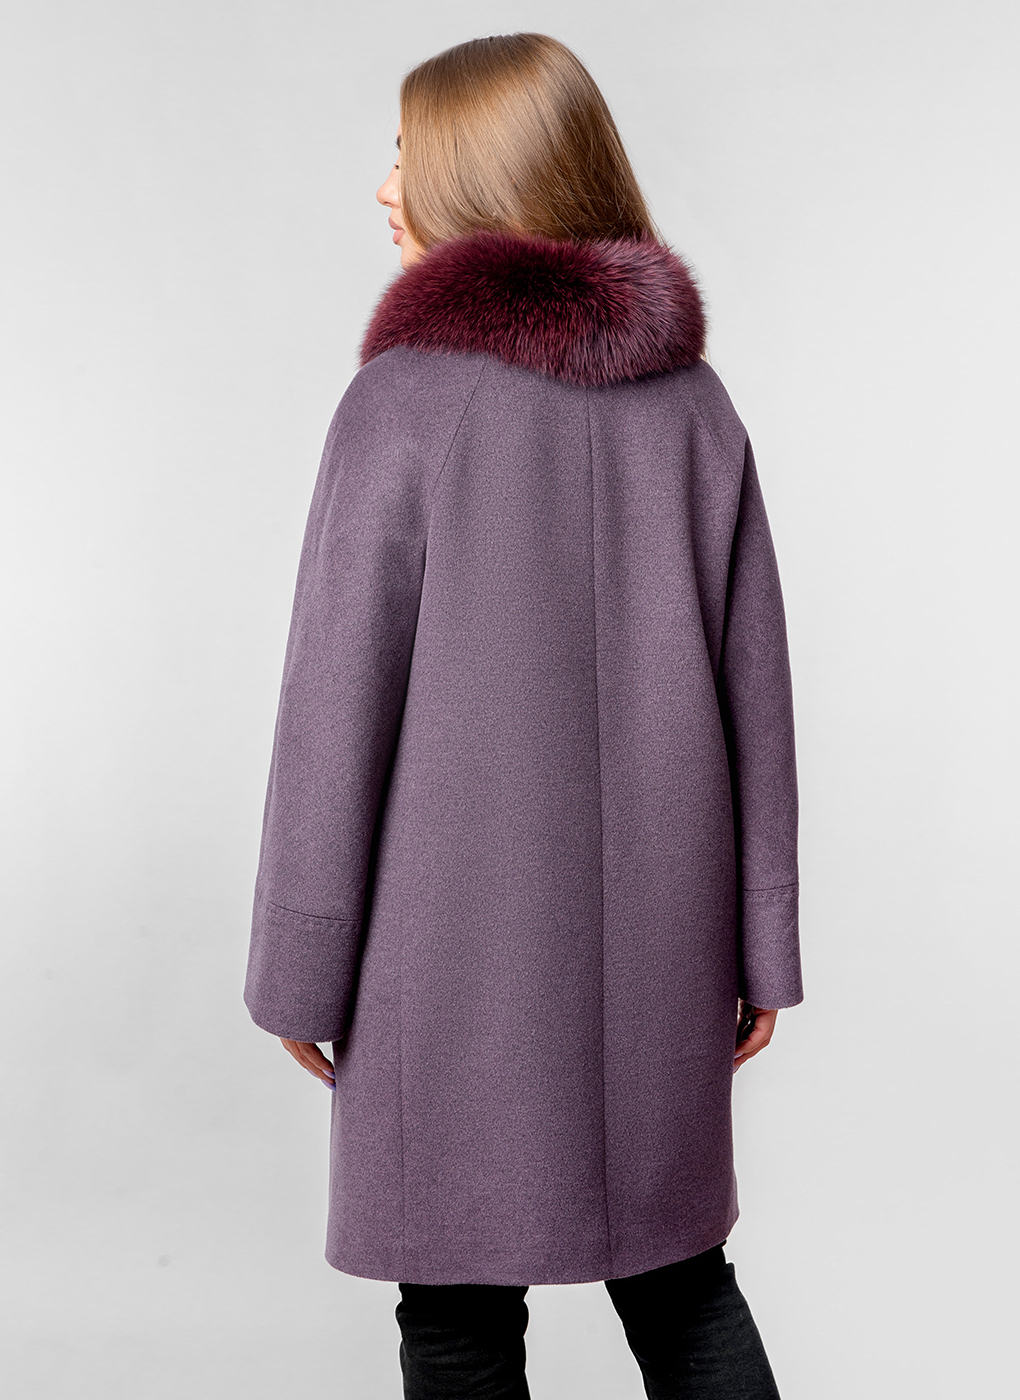 Пальто женское Каляев 57428 фиолетовое 54 RU